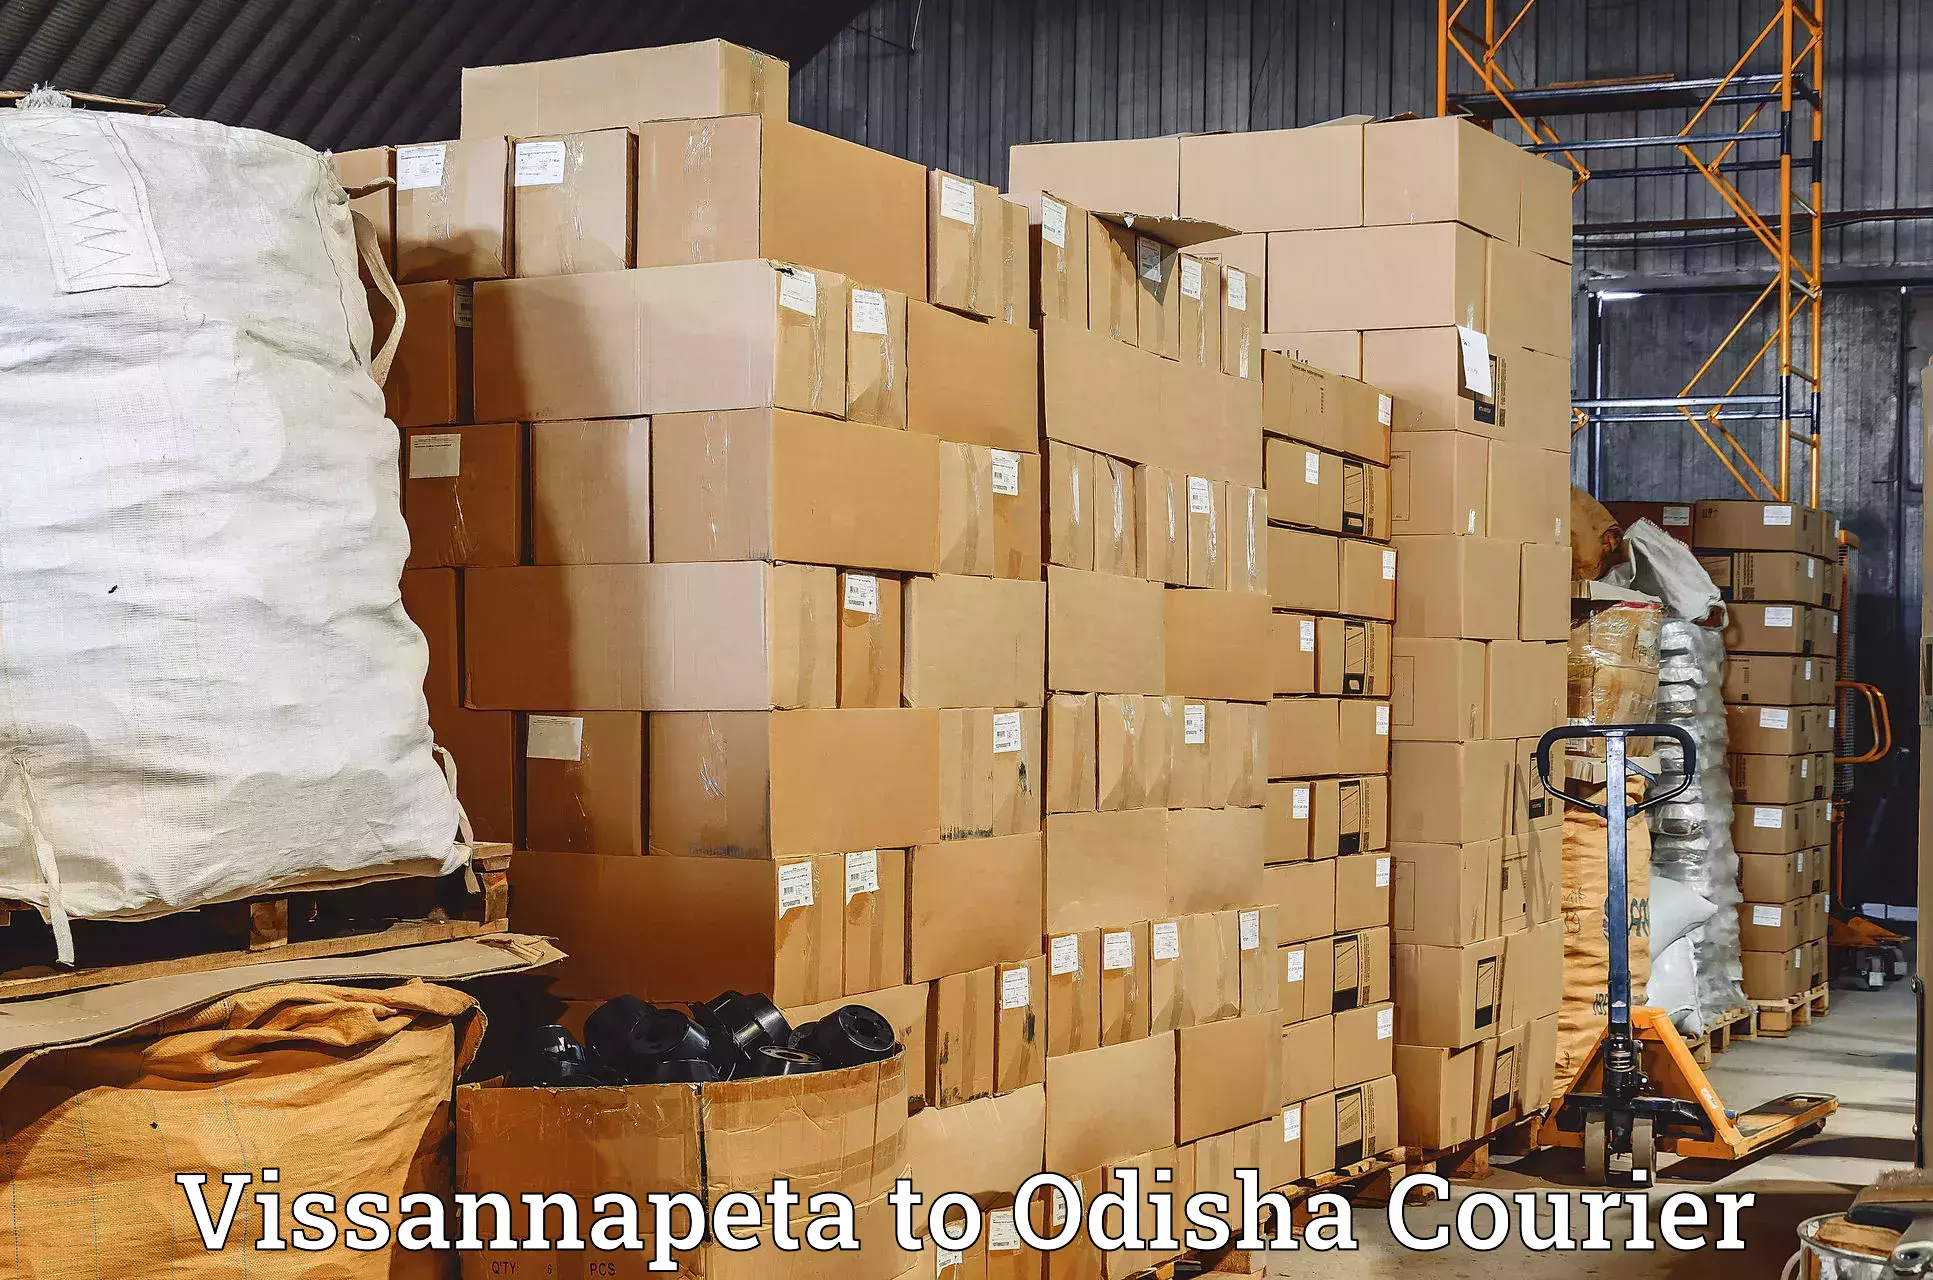 Express logistics providers Vissannapeta to Narasinghpur